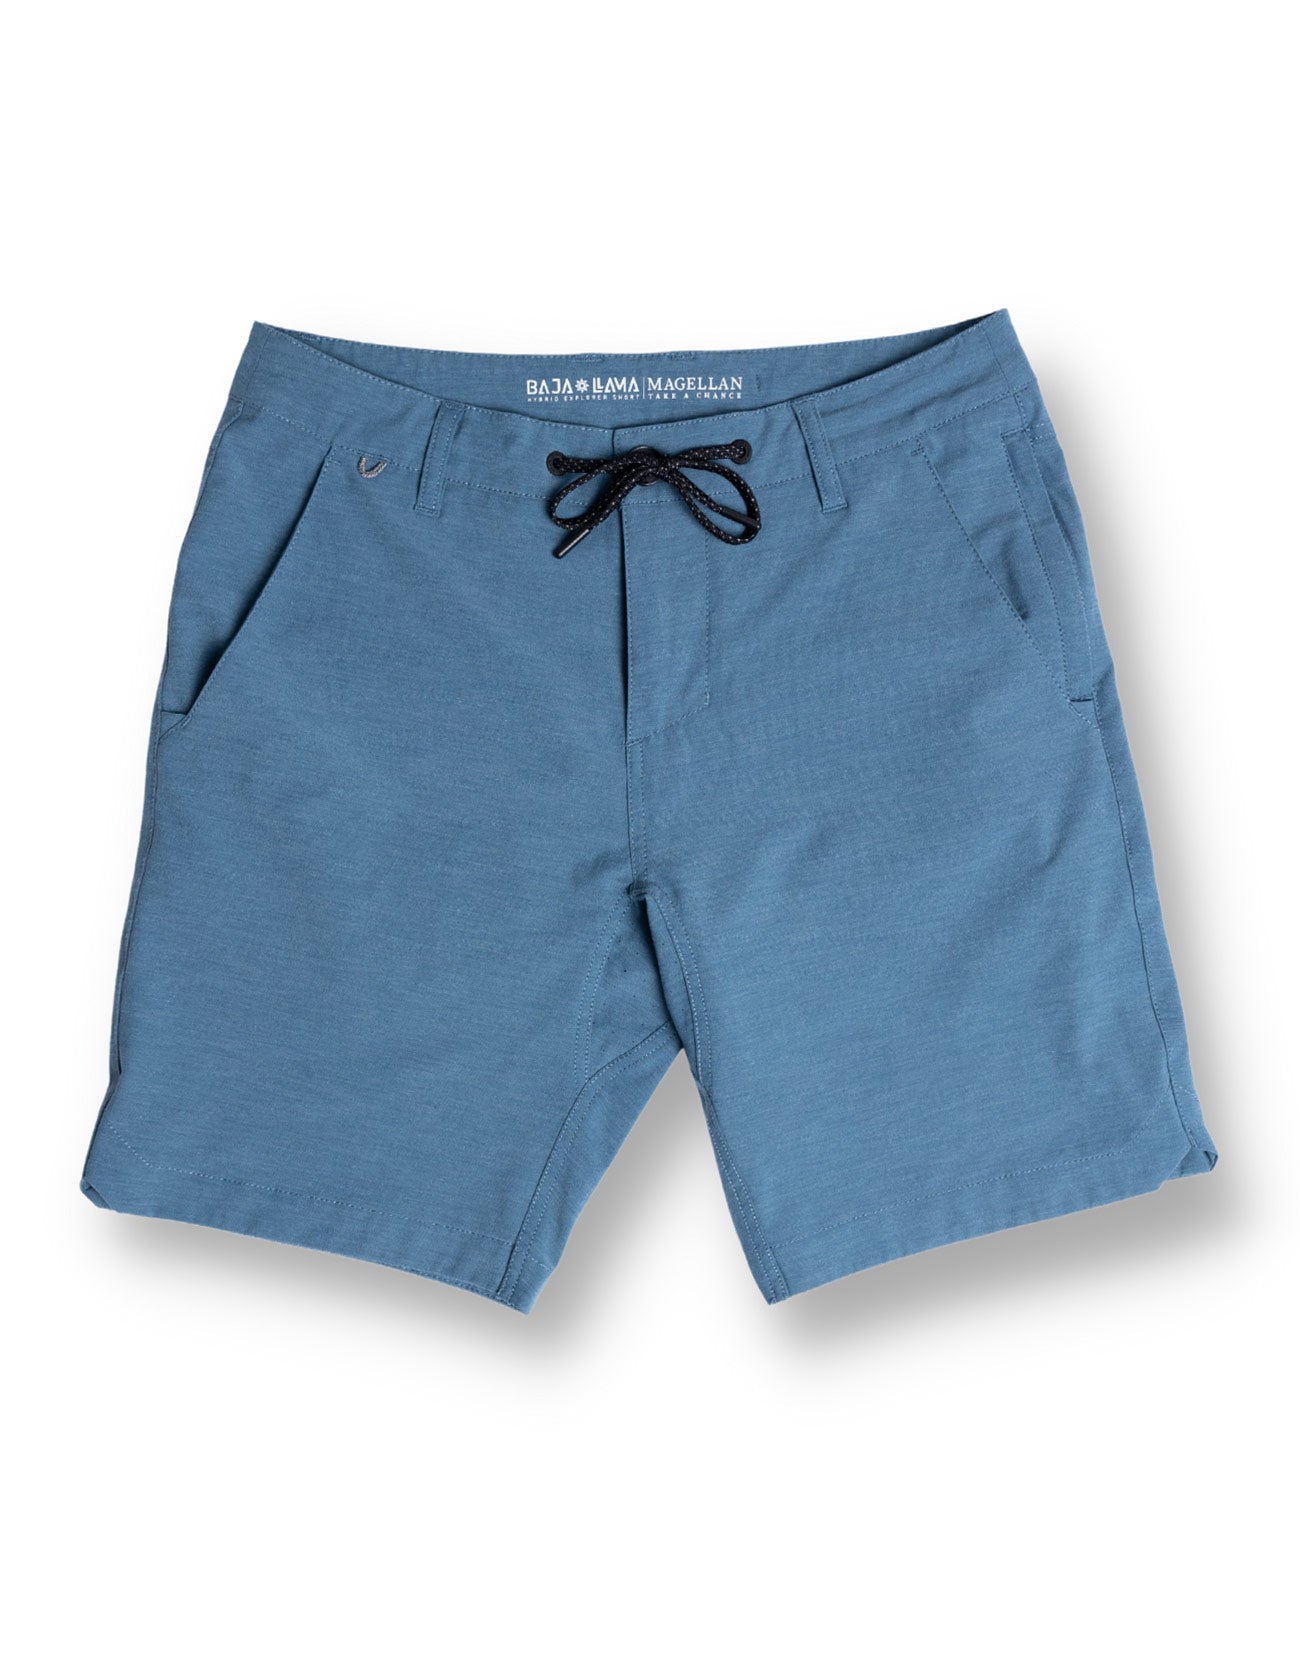 http://bajallama.com/cdn/shop/files/magellan-explorer-shorts-mallard-blue.jpg?v=1701462208